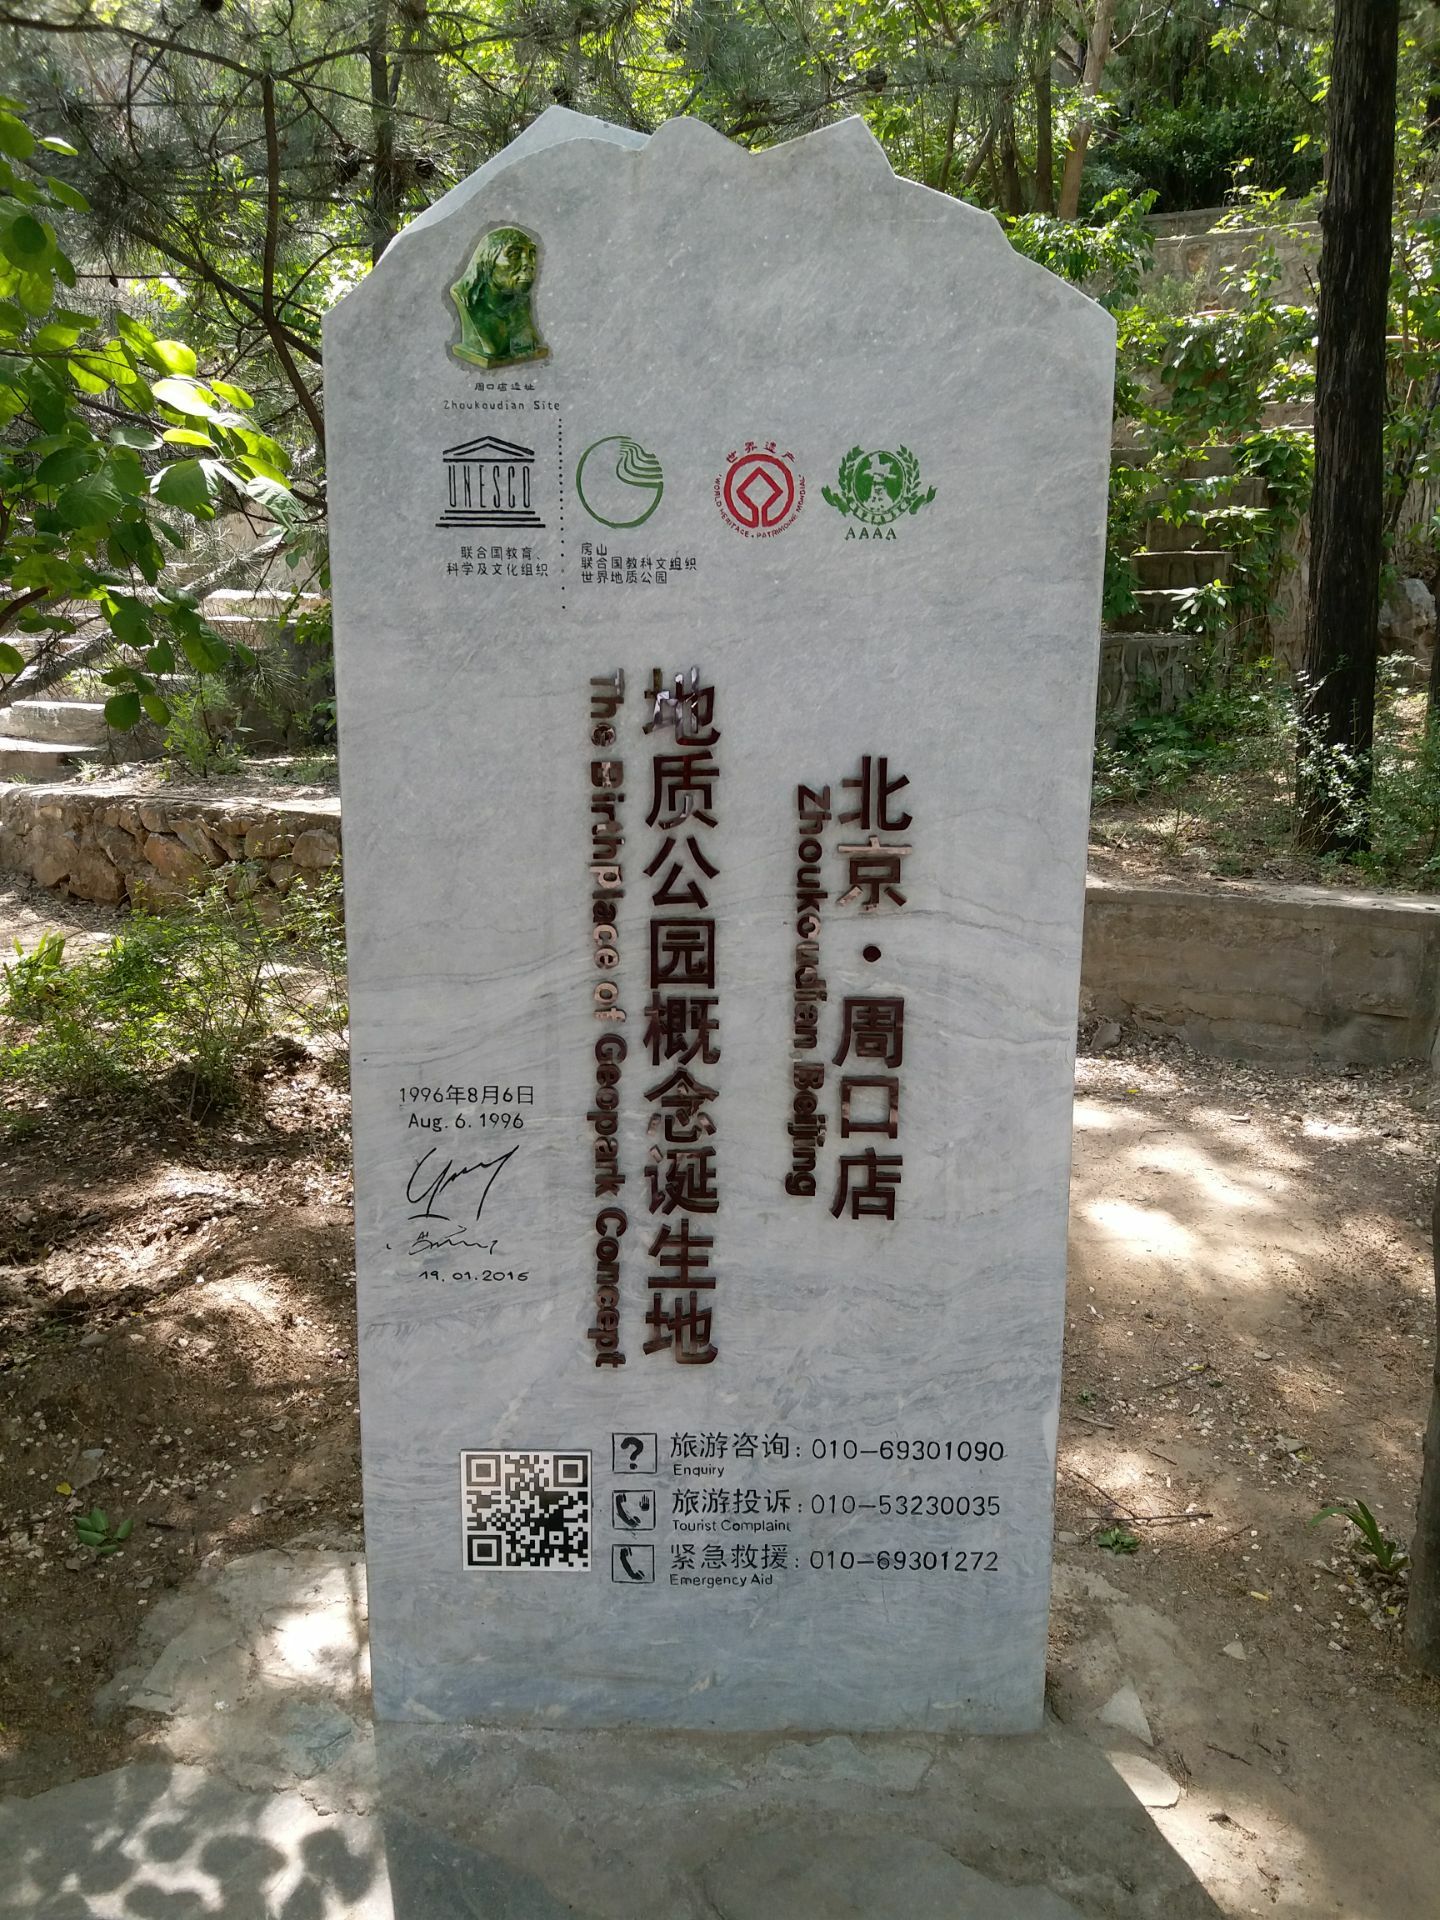 周口店北京人遗址公园周口店北京人遗址公园Zhoukoudian Peking Man Relic Site （East Gate）